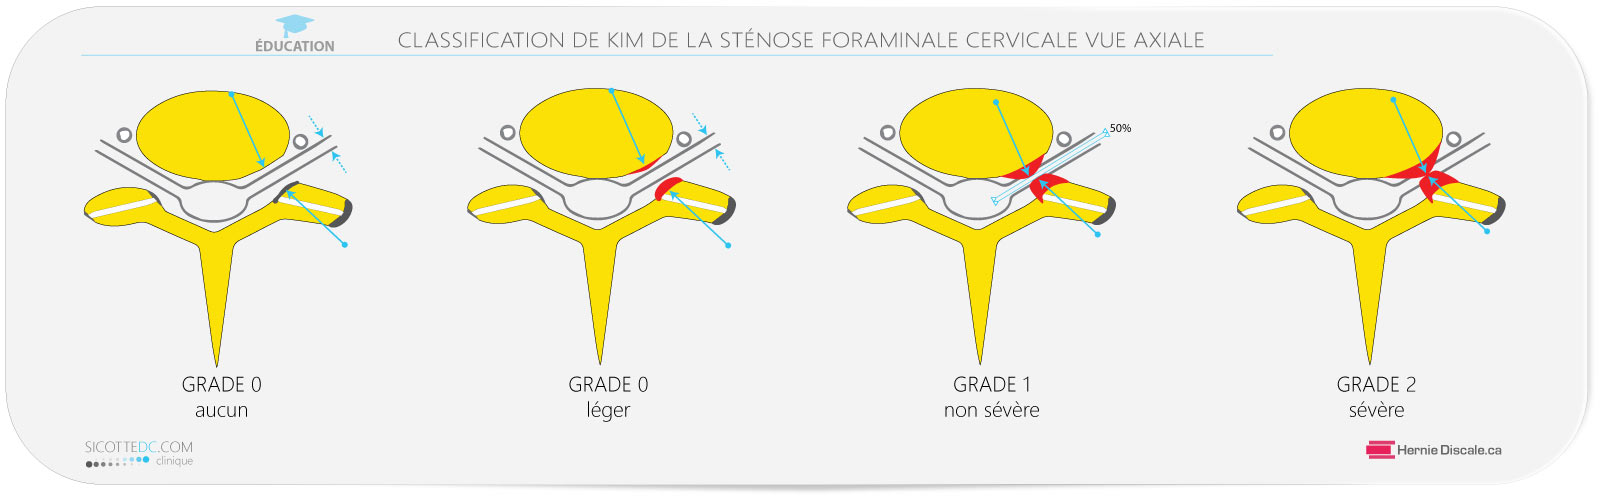 La classification de la sténose foraminale cervicale vue axiale IRM.